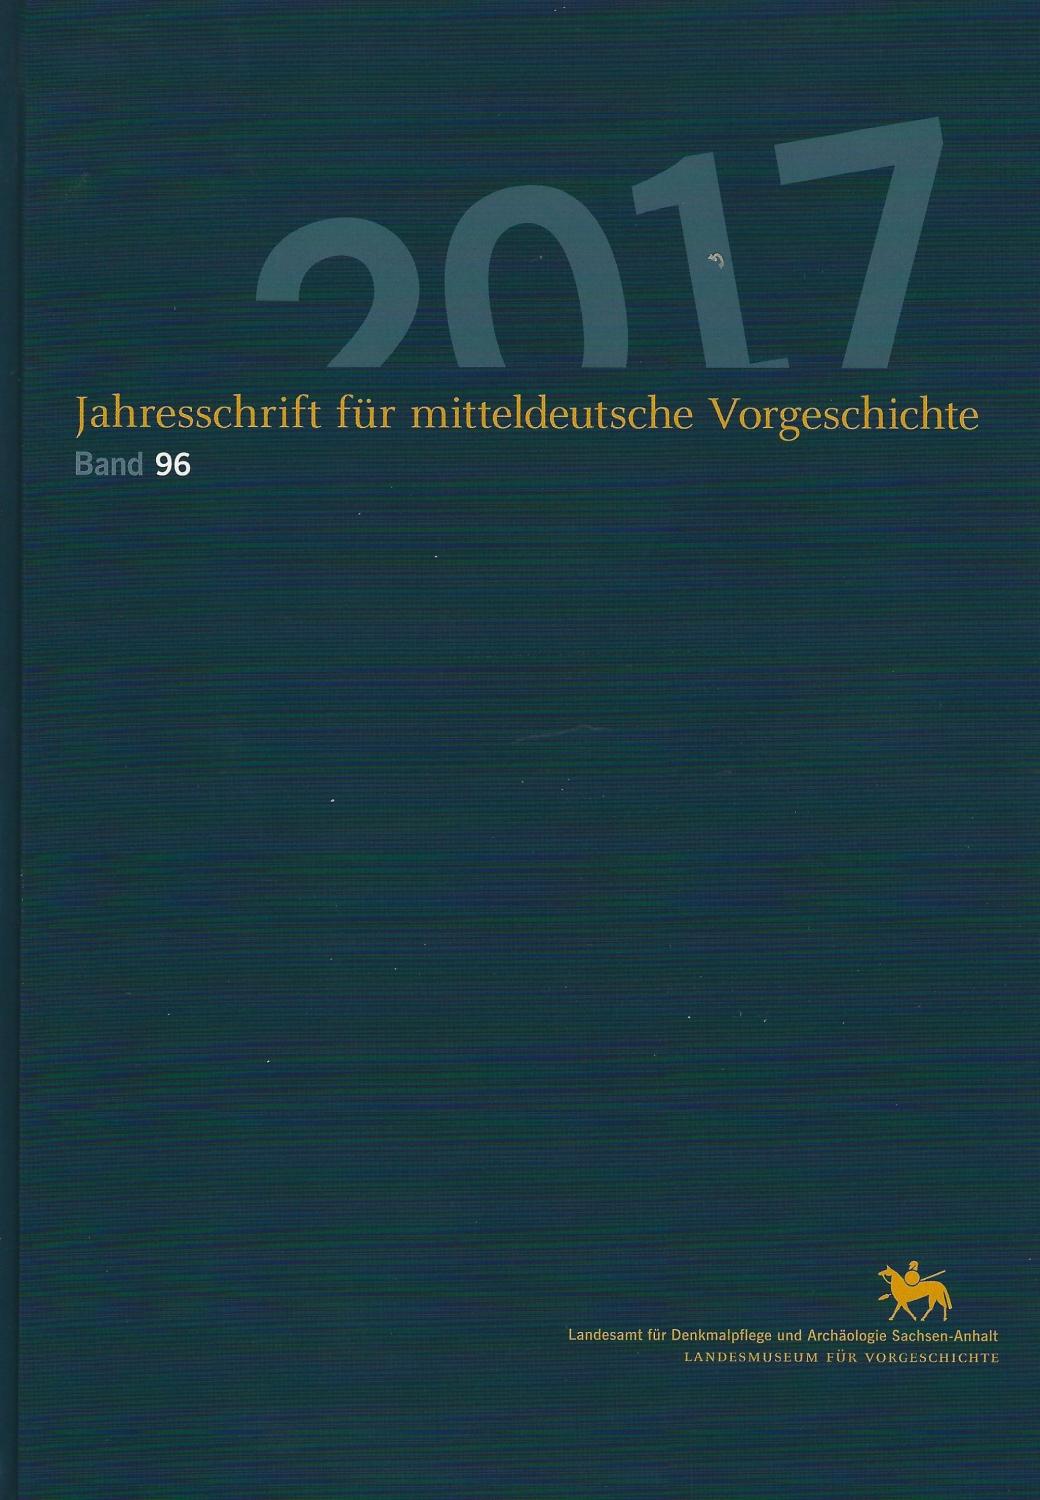 Jahreschrift für mitteldeutsche Vorgeschichte Band 96 (2017) - Hrsg. Harald Meller